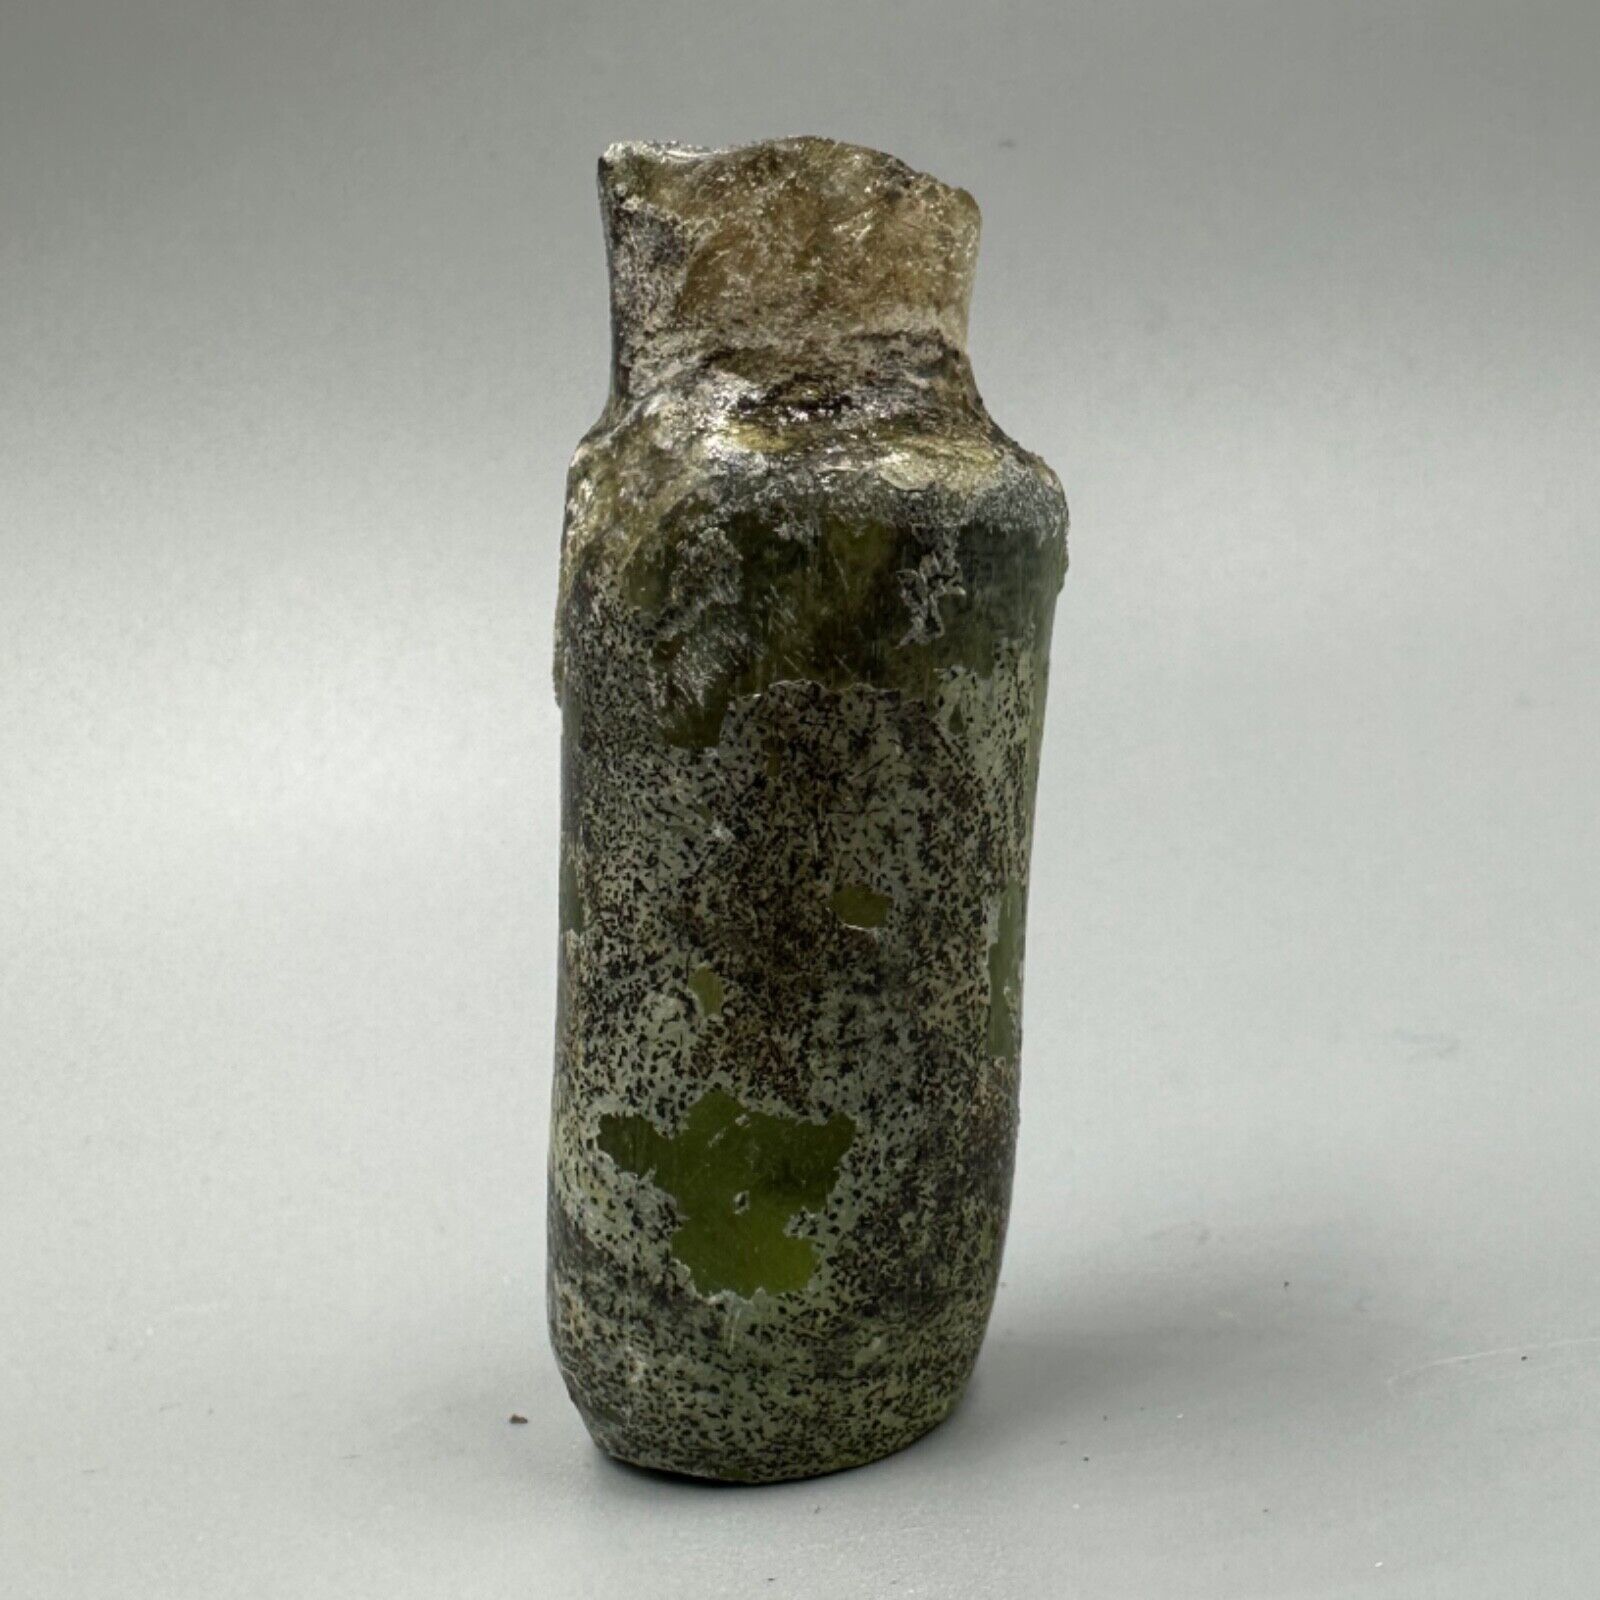 A Rare Unique Ancient Roman Glass Authentic Antique Bottle